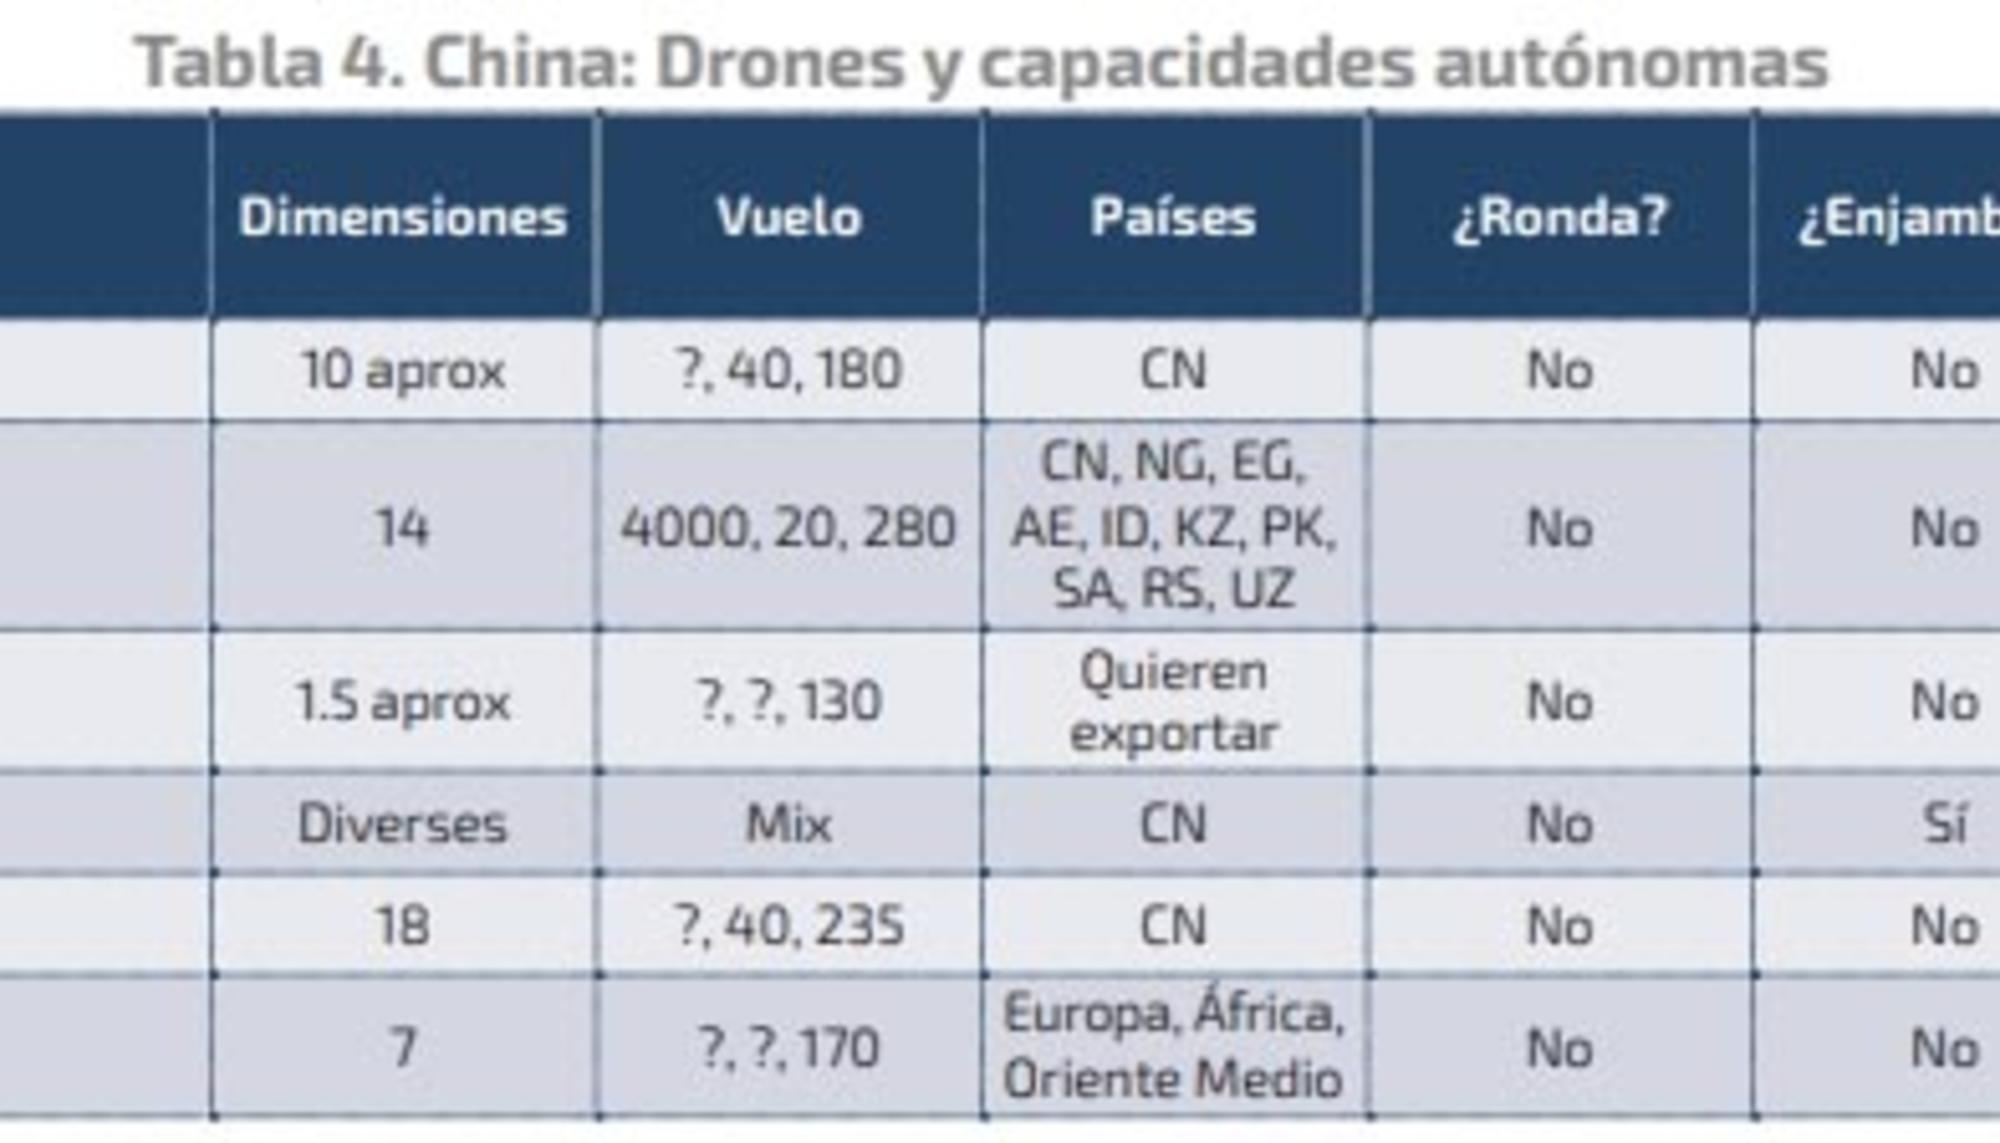 Armas autónomas de China